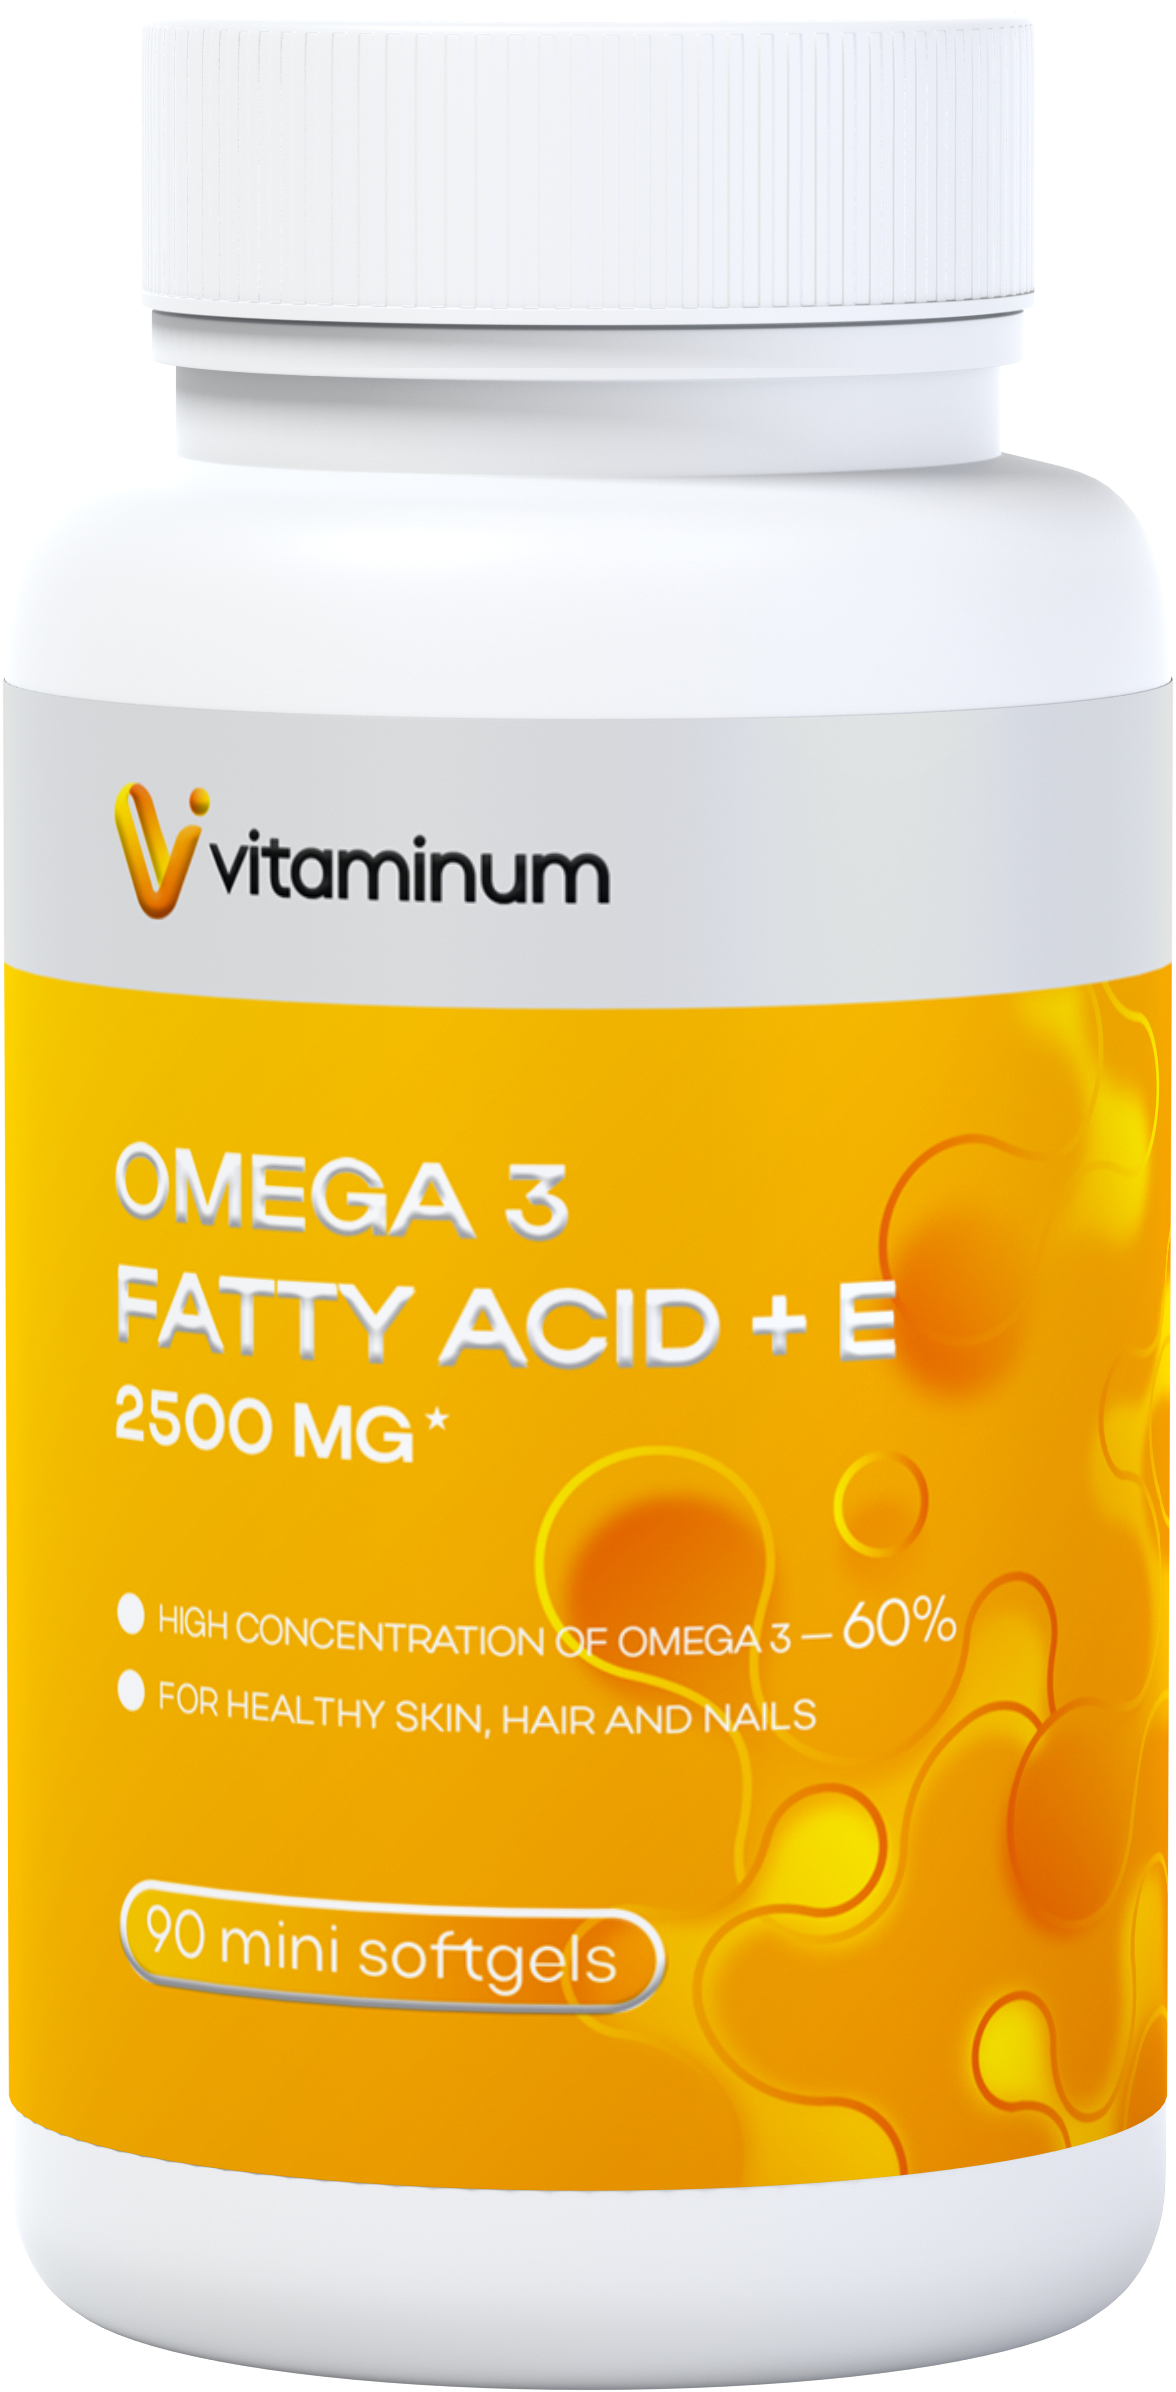  Vitaminum ОМЕГА 3 60% + витамин Е (2500 MG*) 90 капсул 700 мг   в Луге